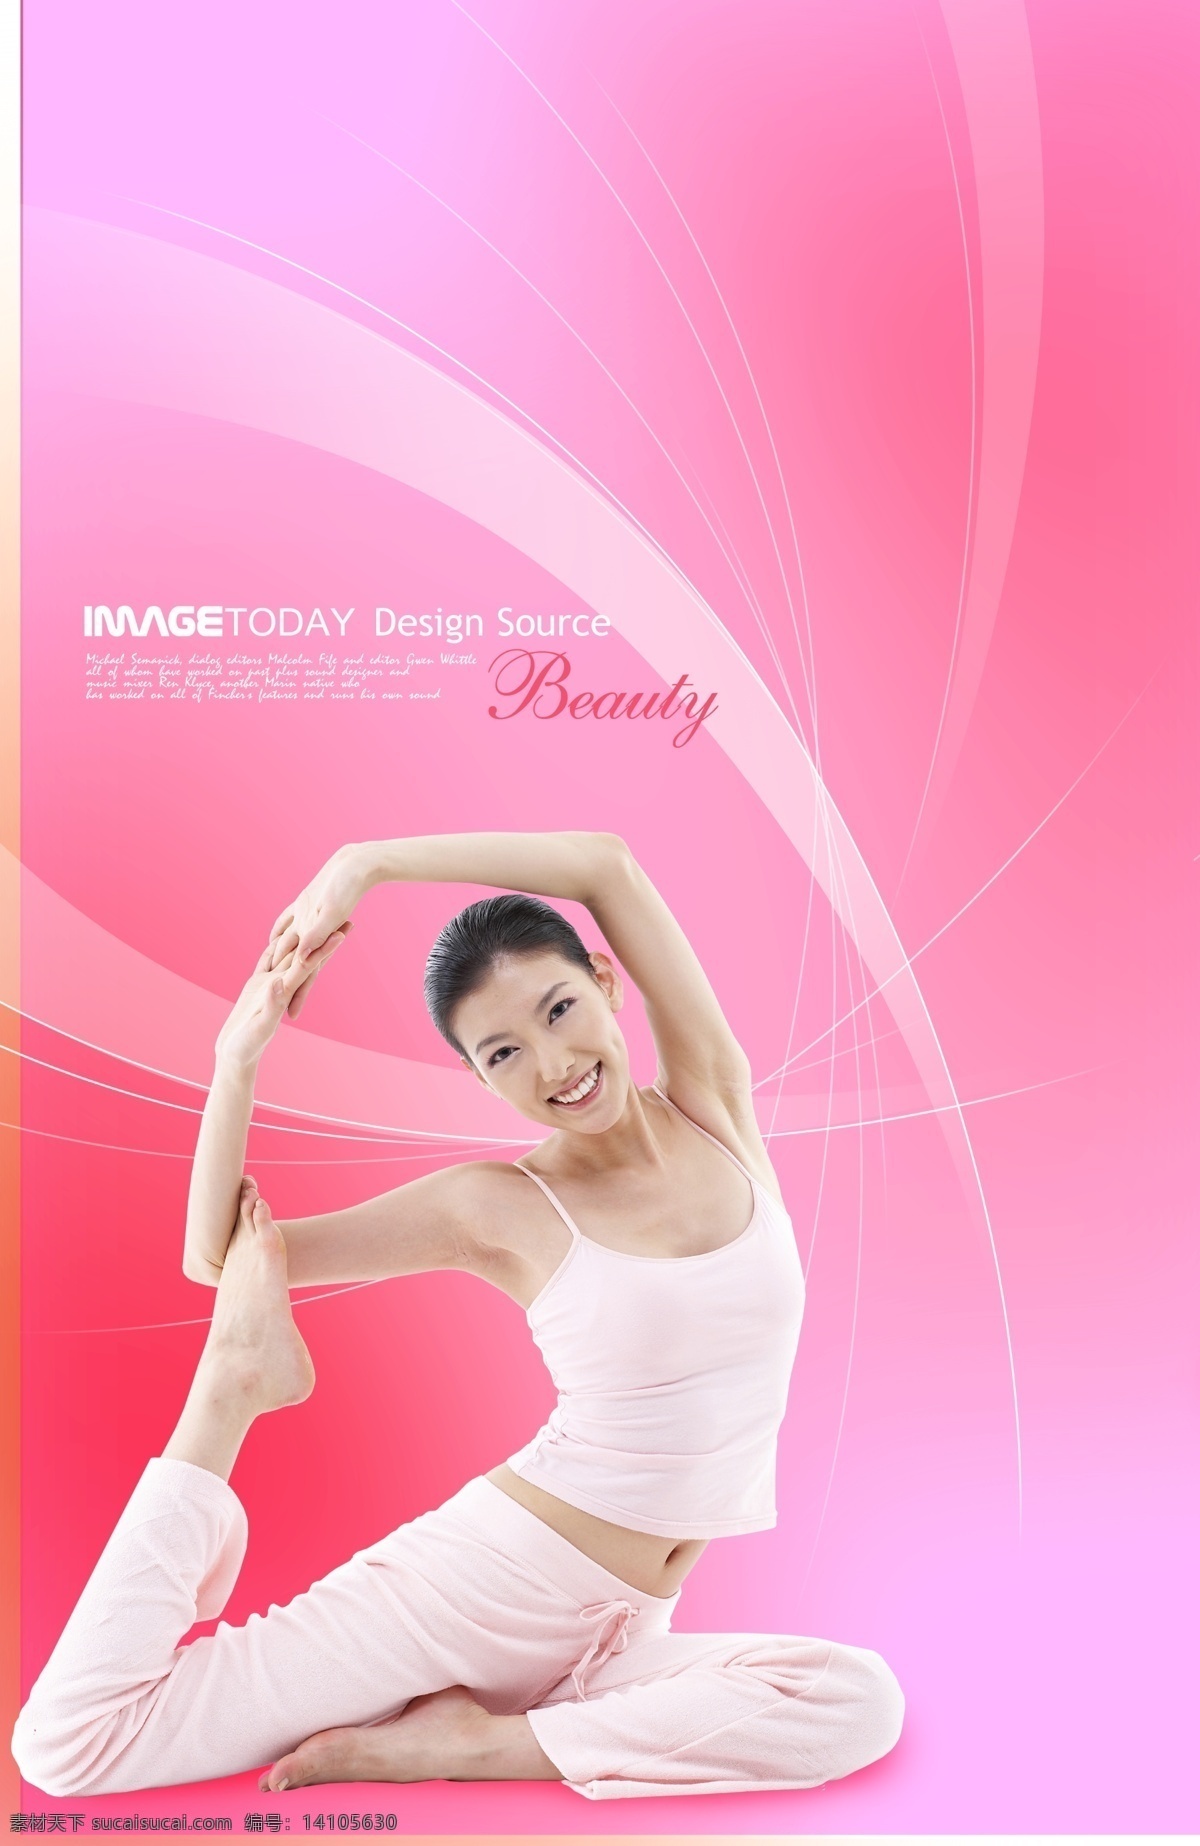 分层 海报宣传 健康 美女 美体 女人 人物 瑜伽 健康生活 模板下载 健康生活1 源文件 psd源文件